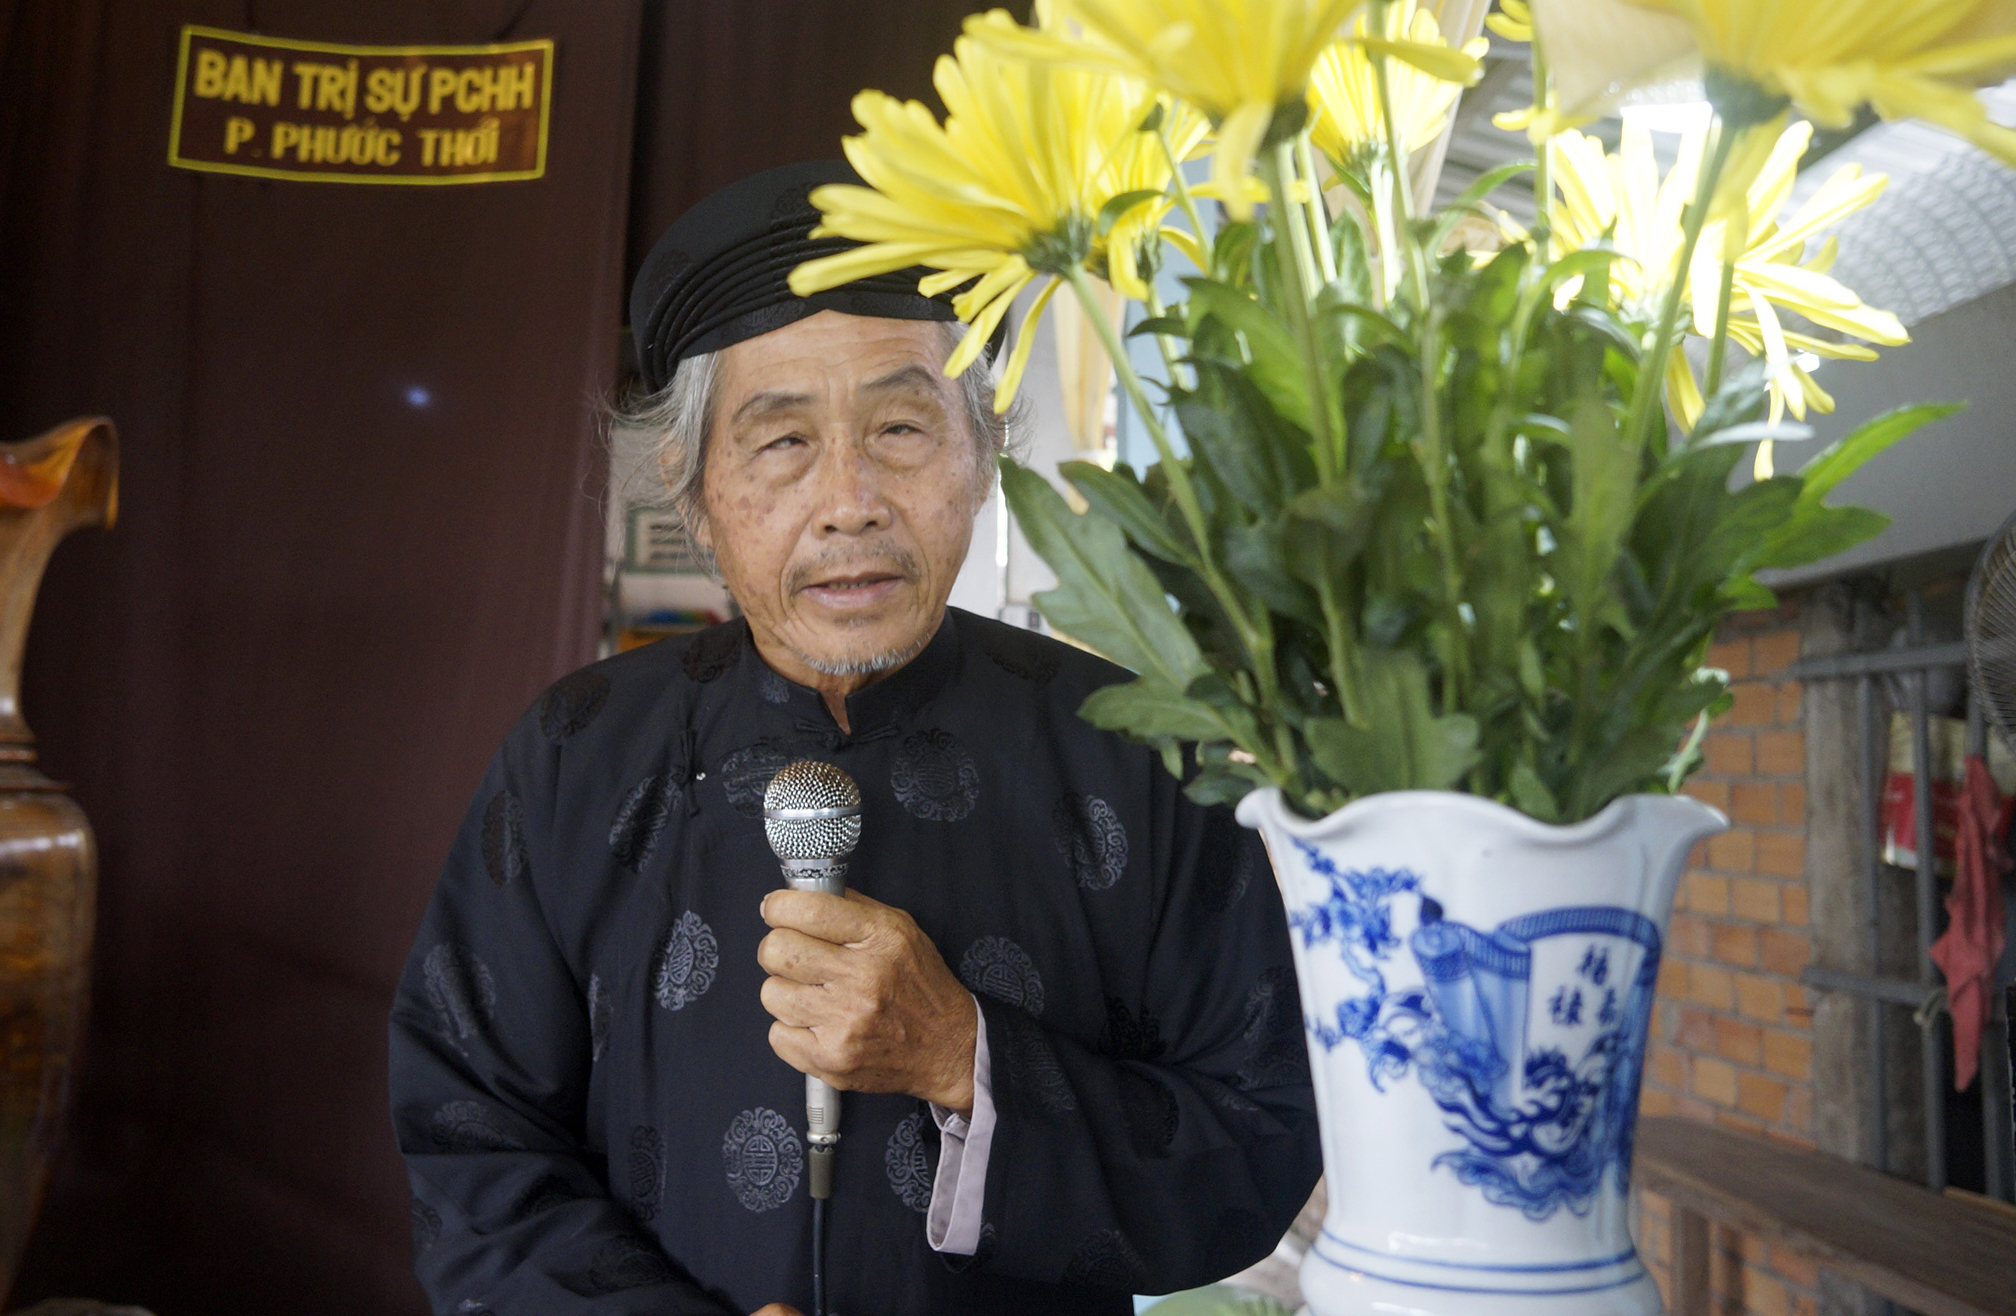 Ảnh 1: Ông Trần Văn Mật – Trưởng ban Ban Trị sự Giáo hội PGHH phường Phước Thới (quận Ô Môn, TPCT) phát biểu khai mạc lễ